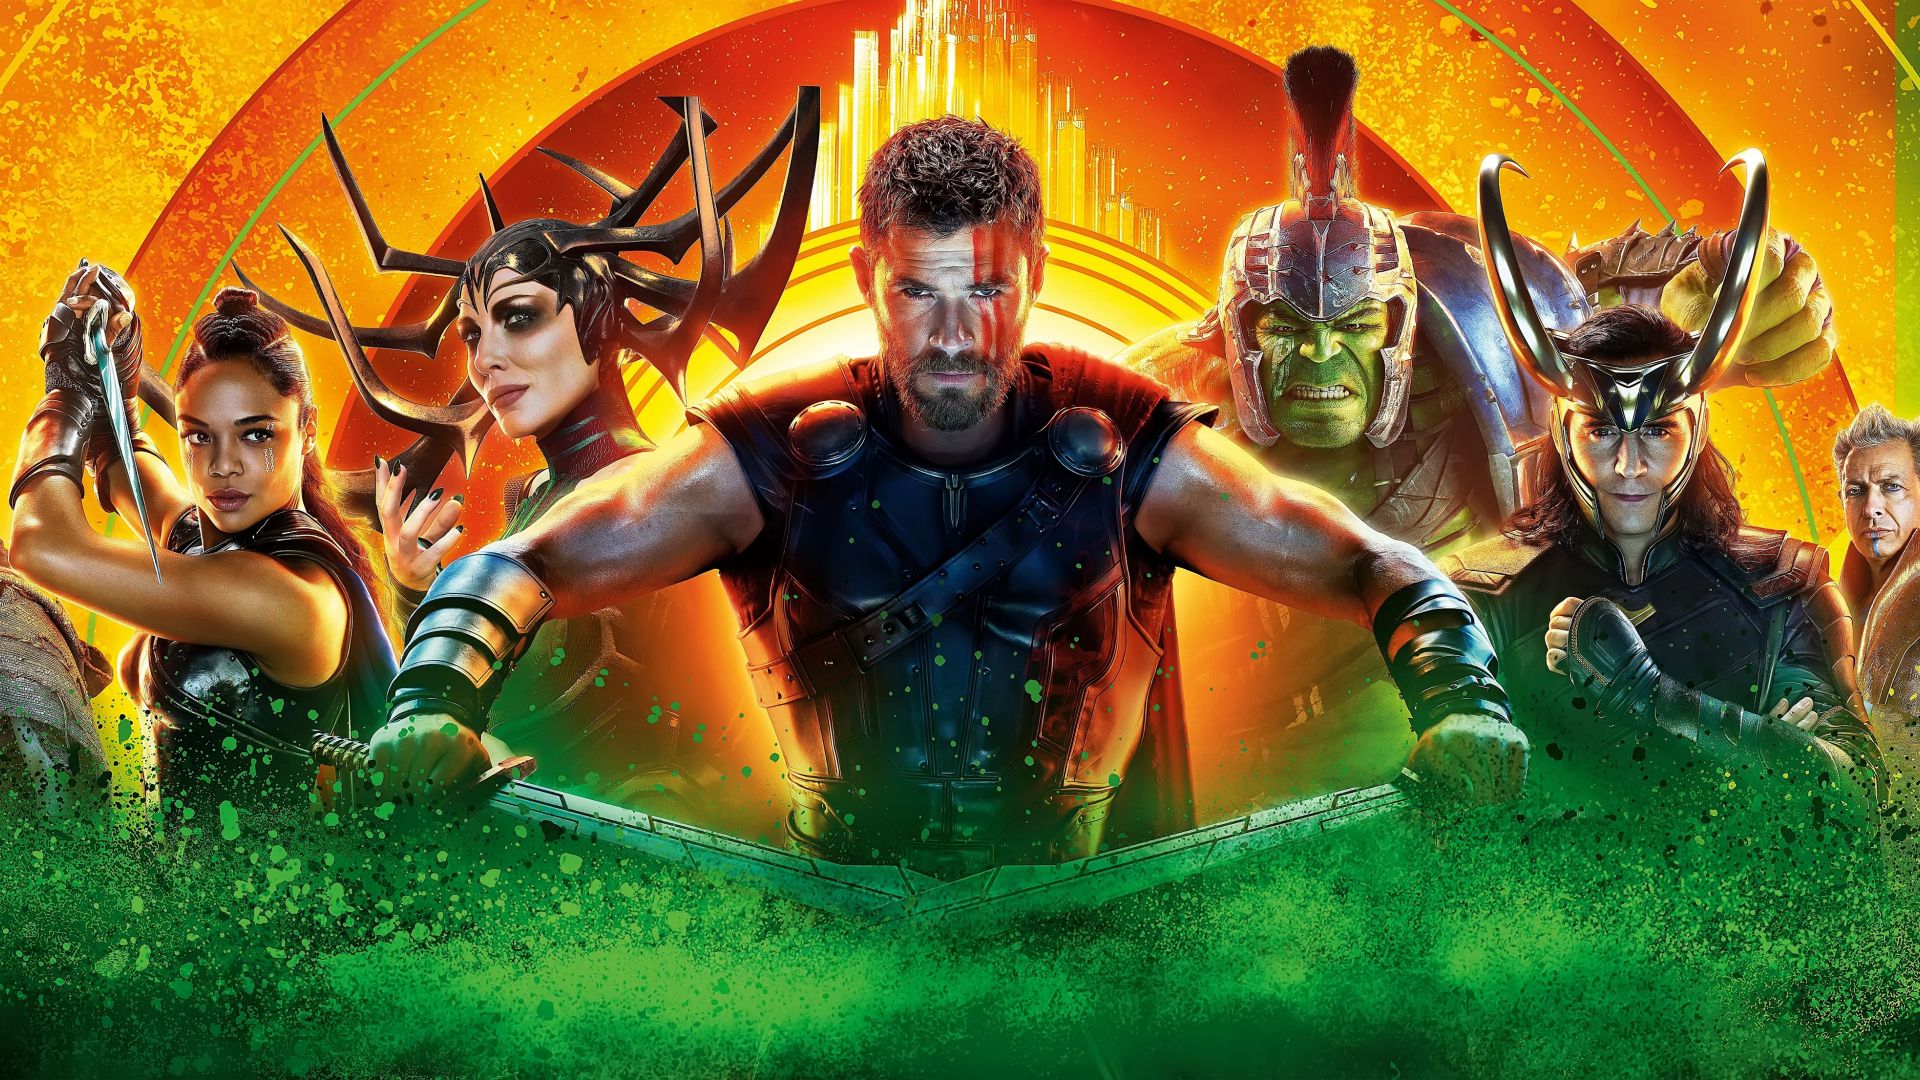 Wallpaper Thor: ragnarok, superheros, 2017 movie, 5k